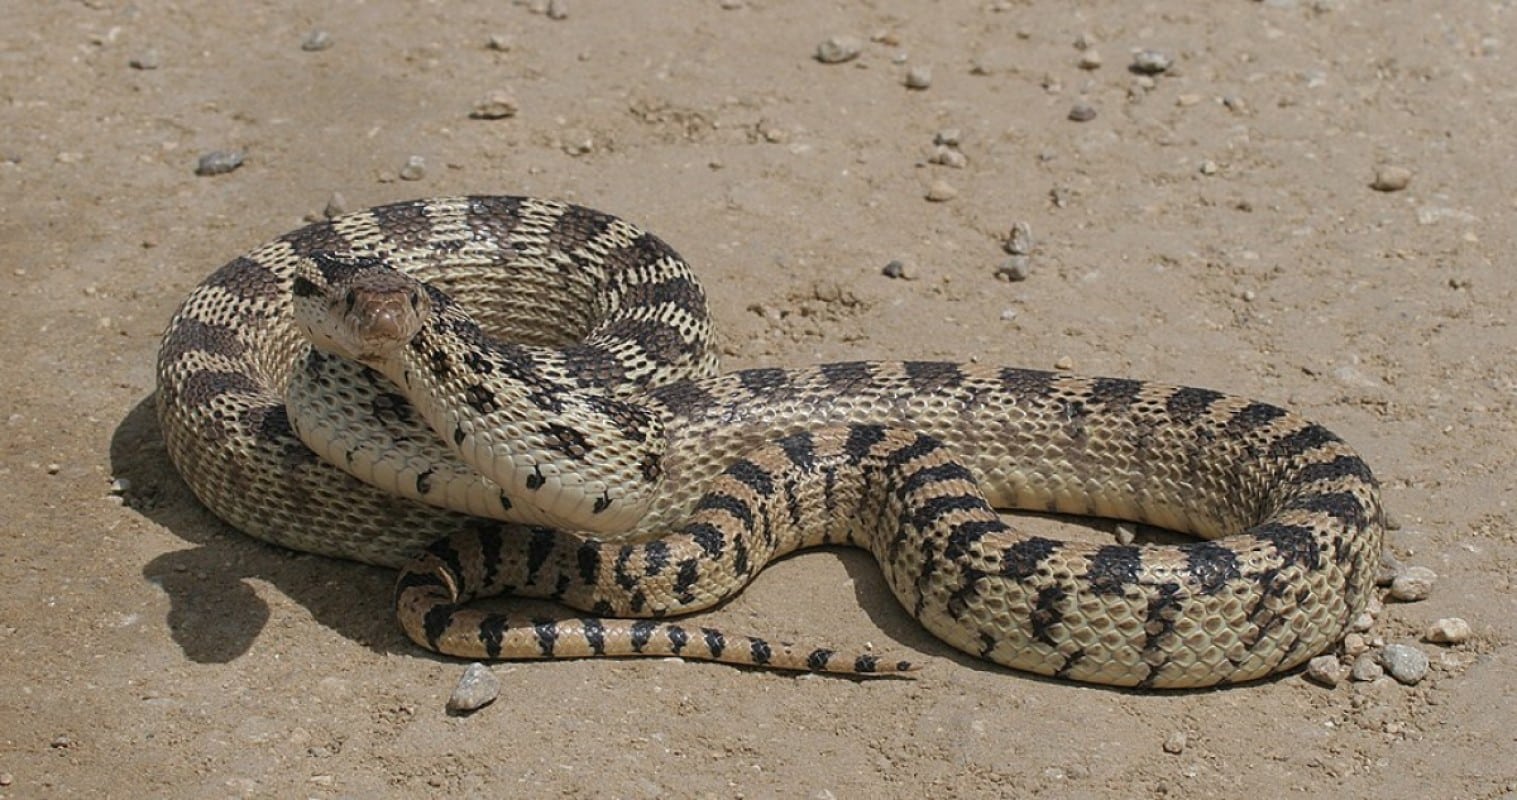 A cobra gopher tem um mecanismo de defesa único, no qual incha o corpo e se enrola na clássica pose de ataque de uma cascavel.